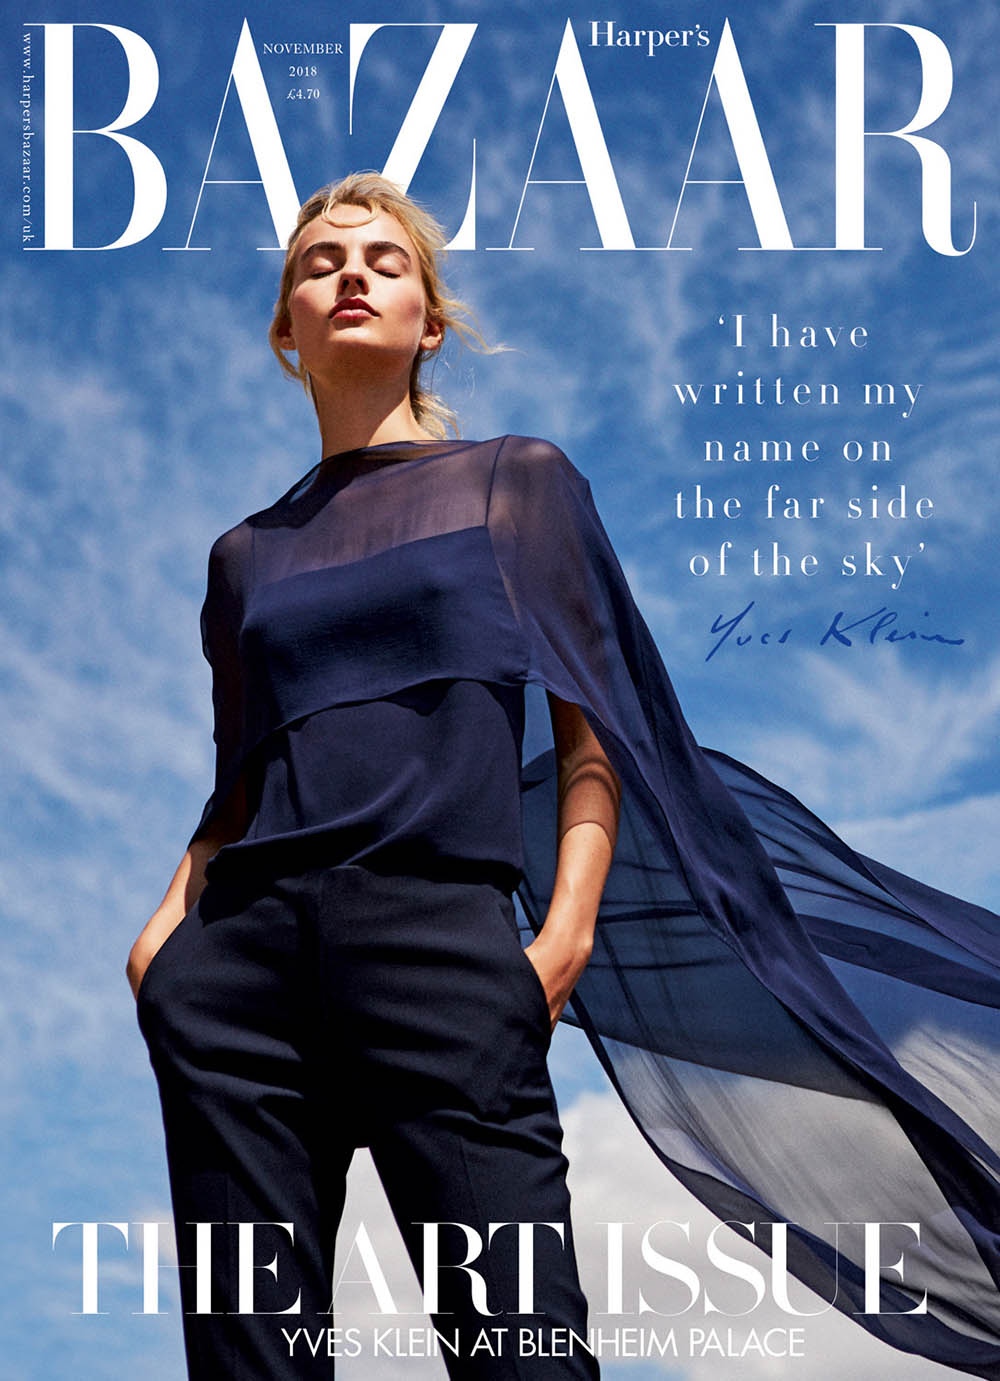 Maartje Verhoef covers Harper’s Bazaar UK November 2018 by Josh Shinner